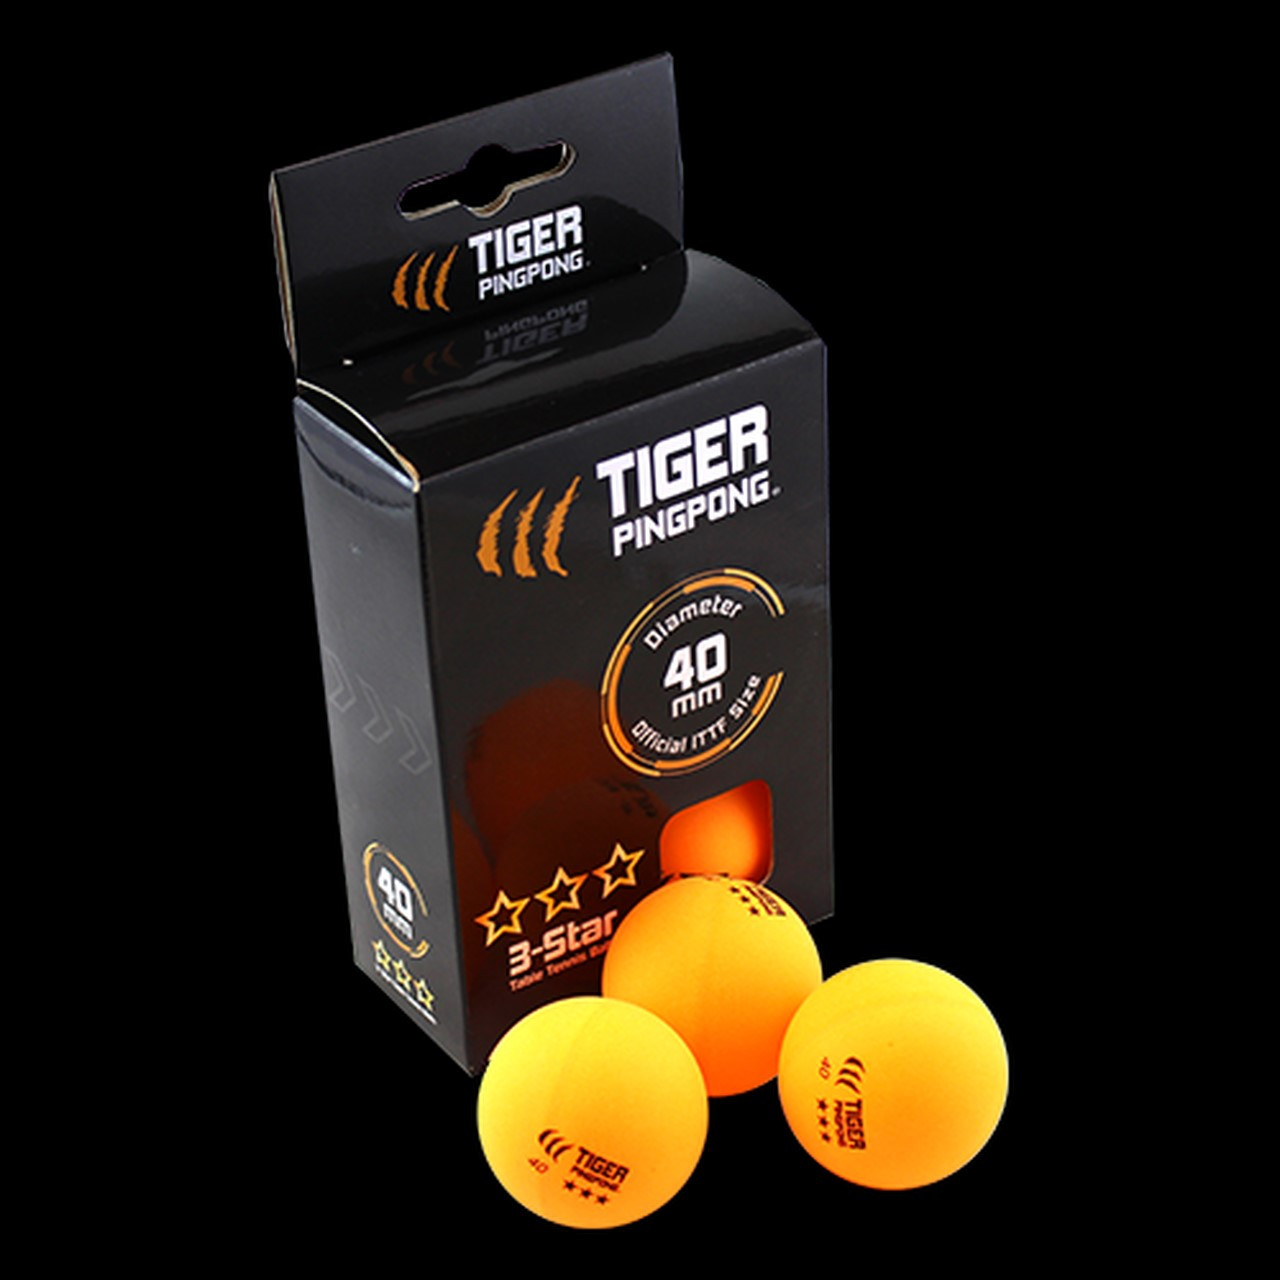 Tiger PingPong Premium 3-Star Ping Pong Balls 6 Balls Orange